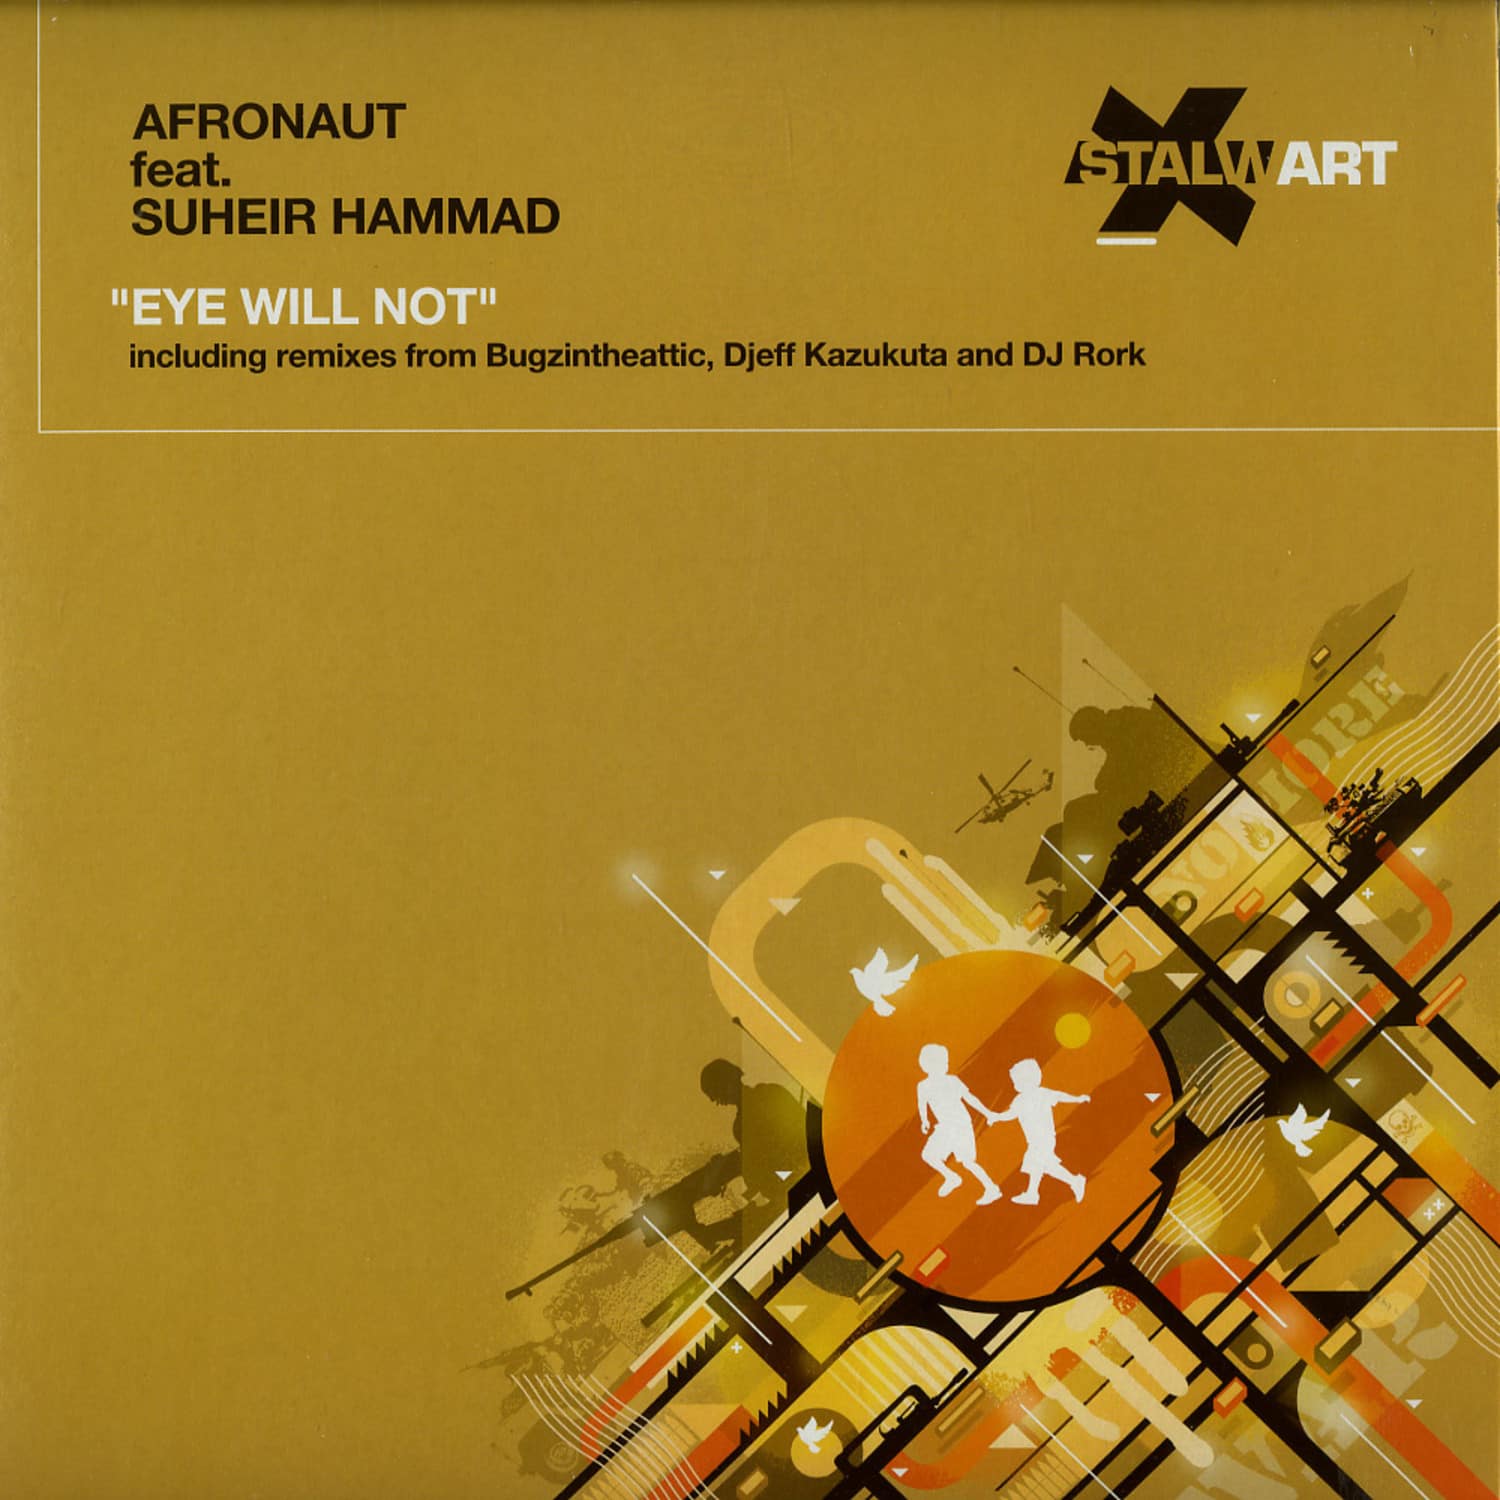 Afronaut feat. Suheir Hammad - EYE WILL NOT